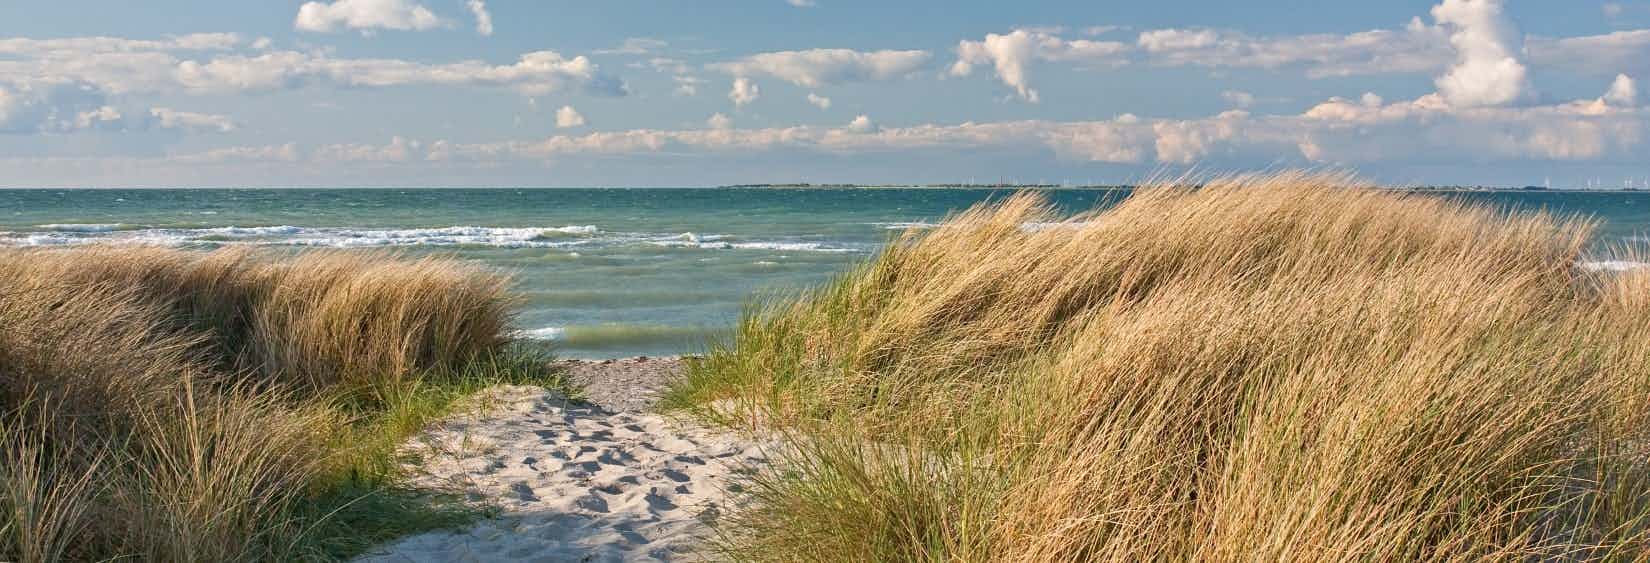 Camping an der Ostsee am Meer